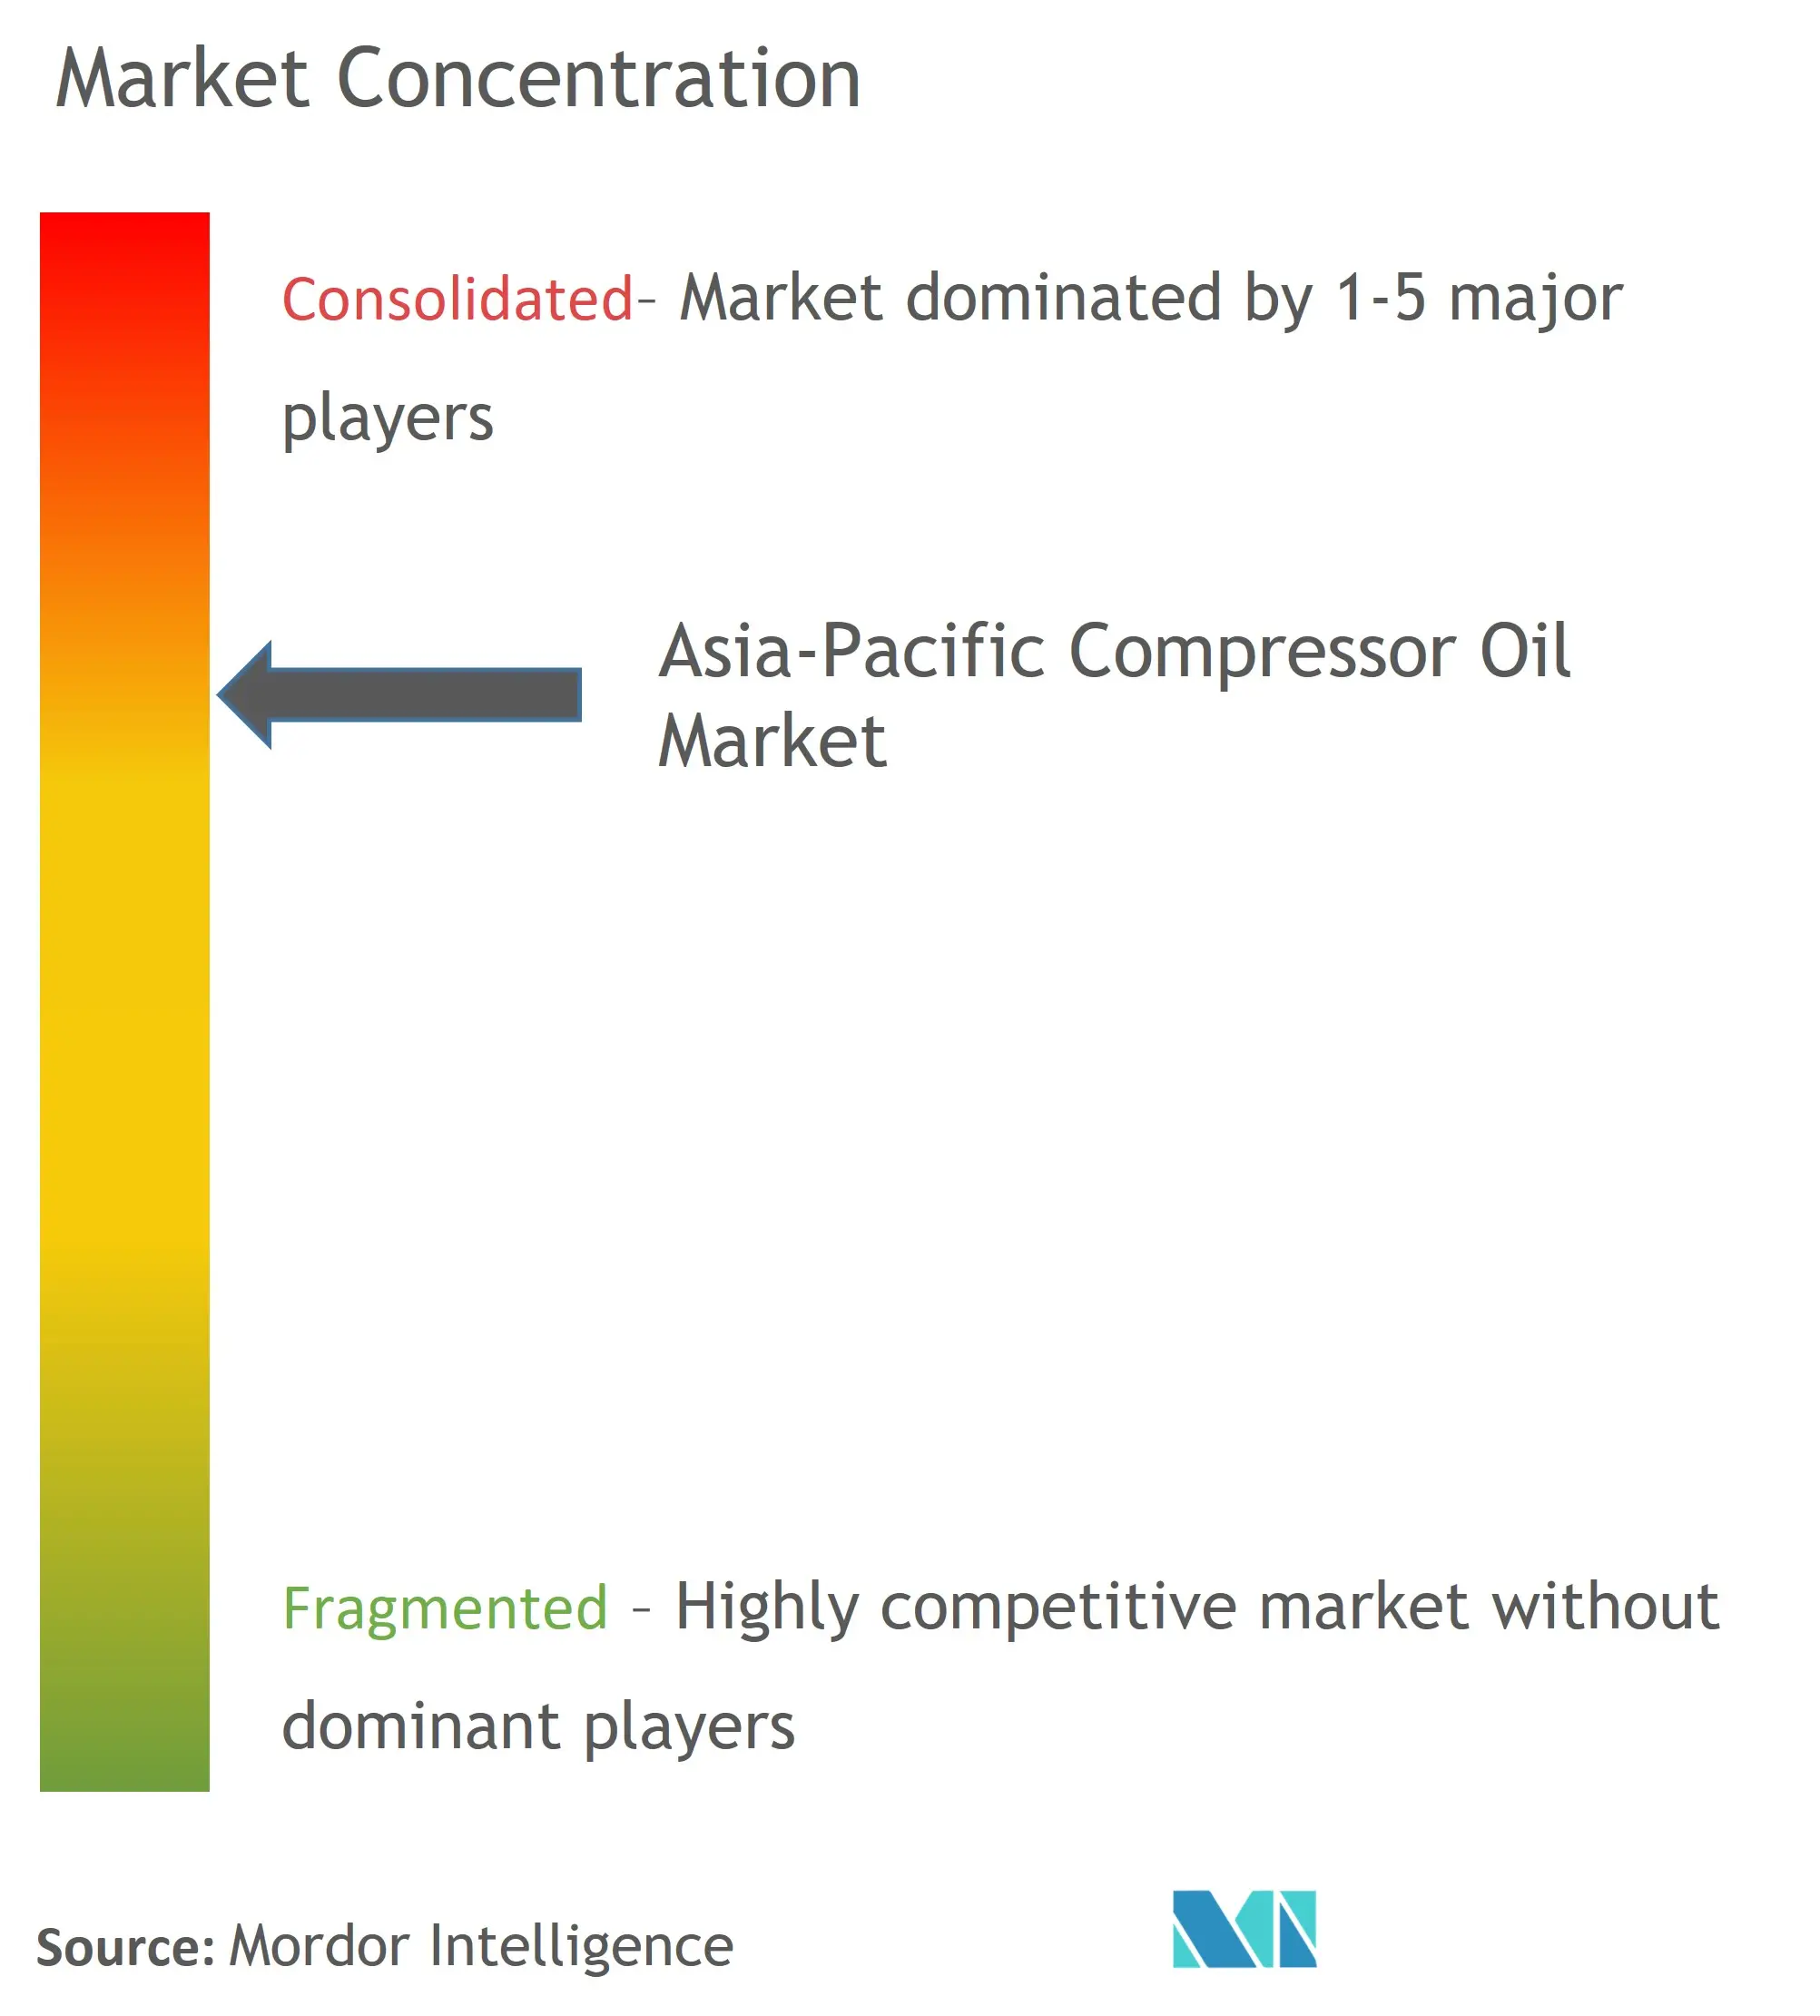 Asia-Pacific Compressor Oil Market Concentration